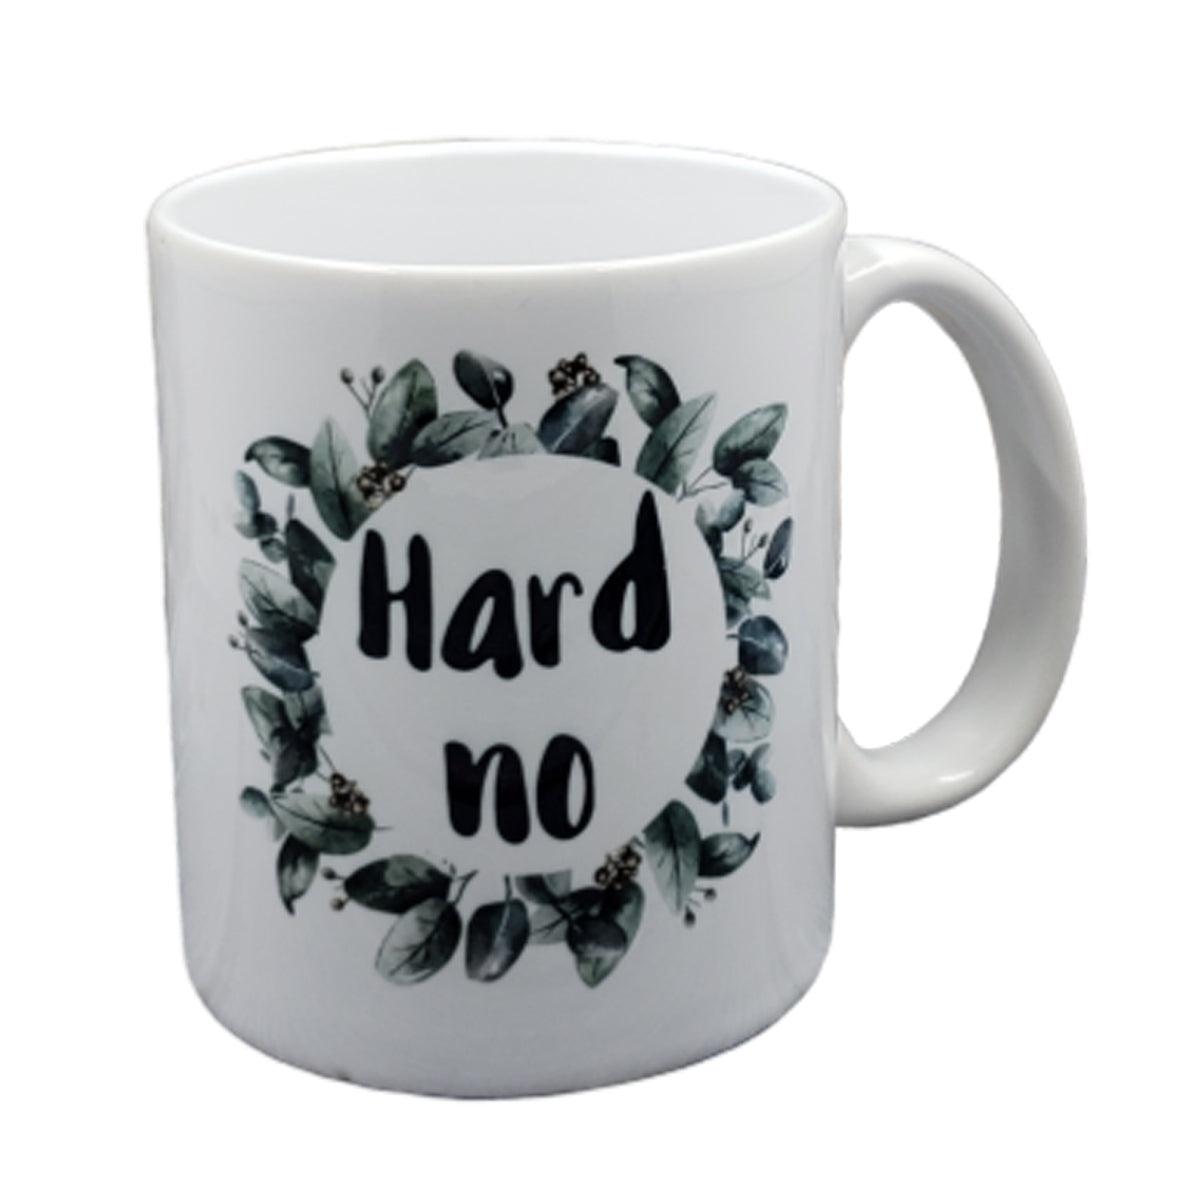 Hard No Mug